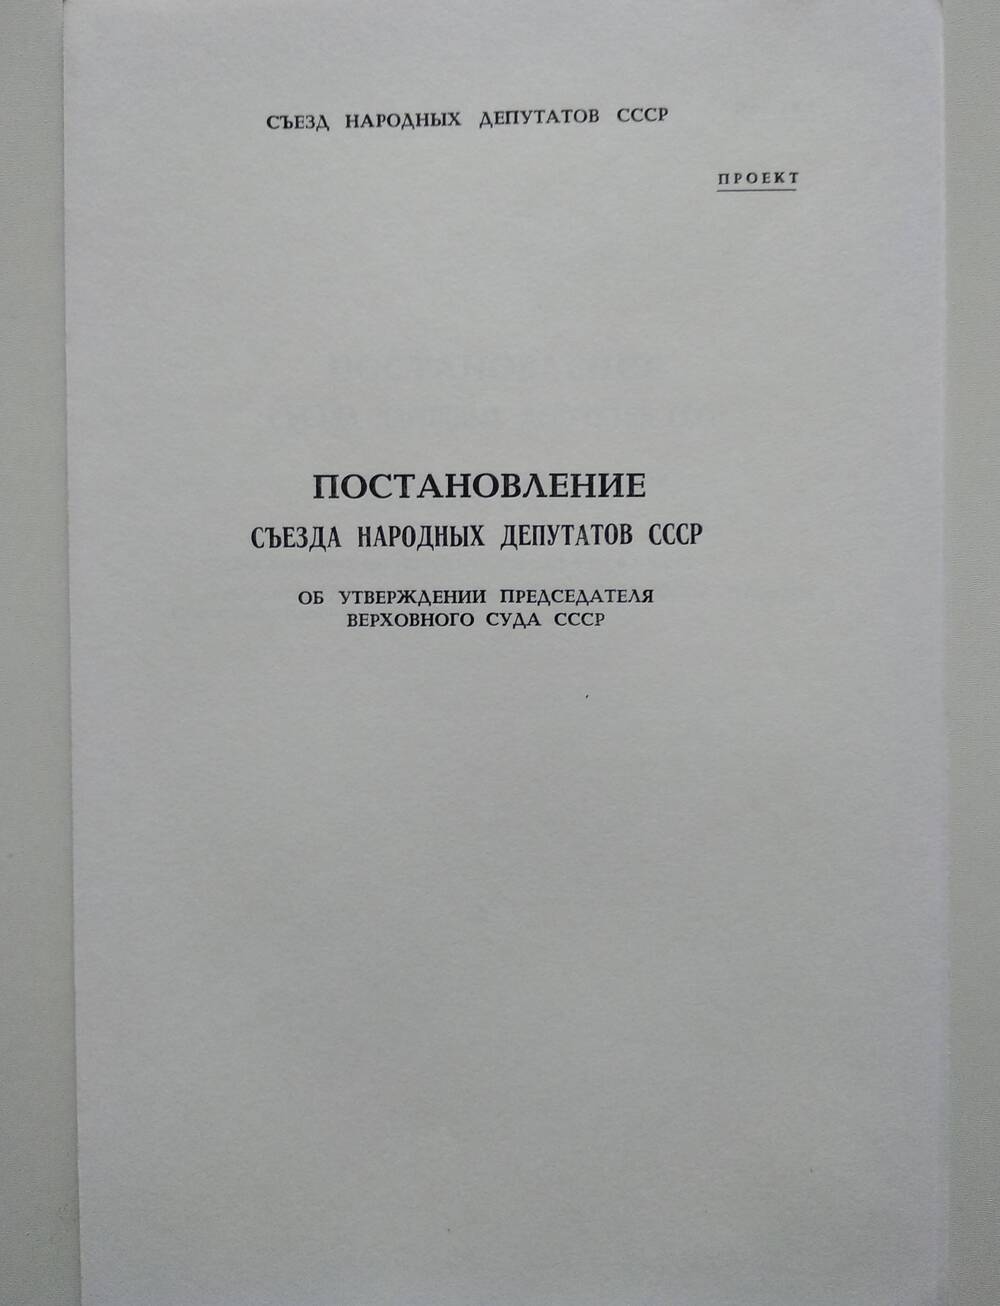 Проект постановления съезда народных депутатов СССР об утверждении председателя Верховного суда СССР.